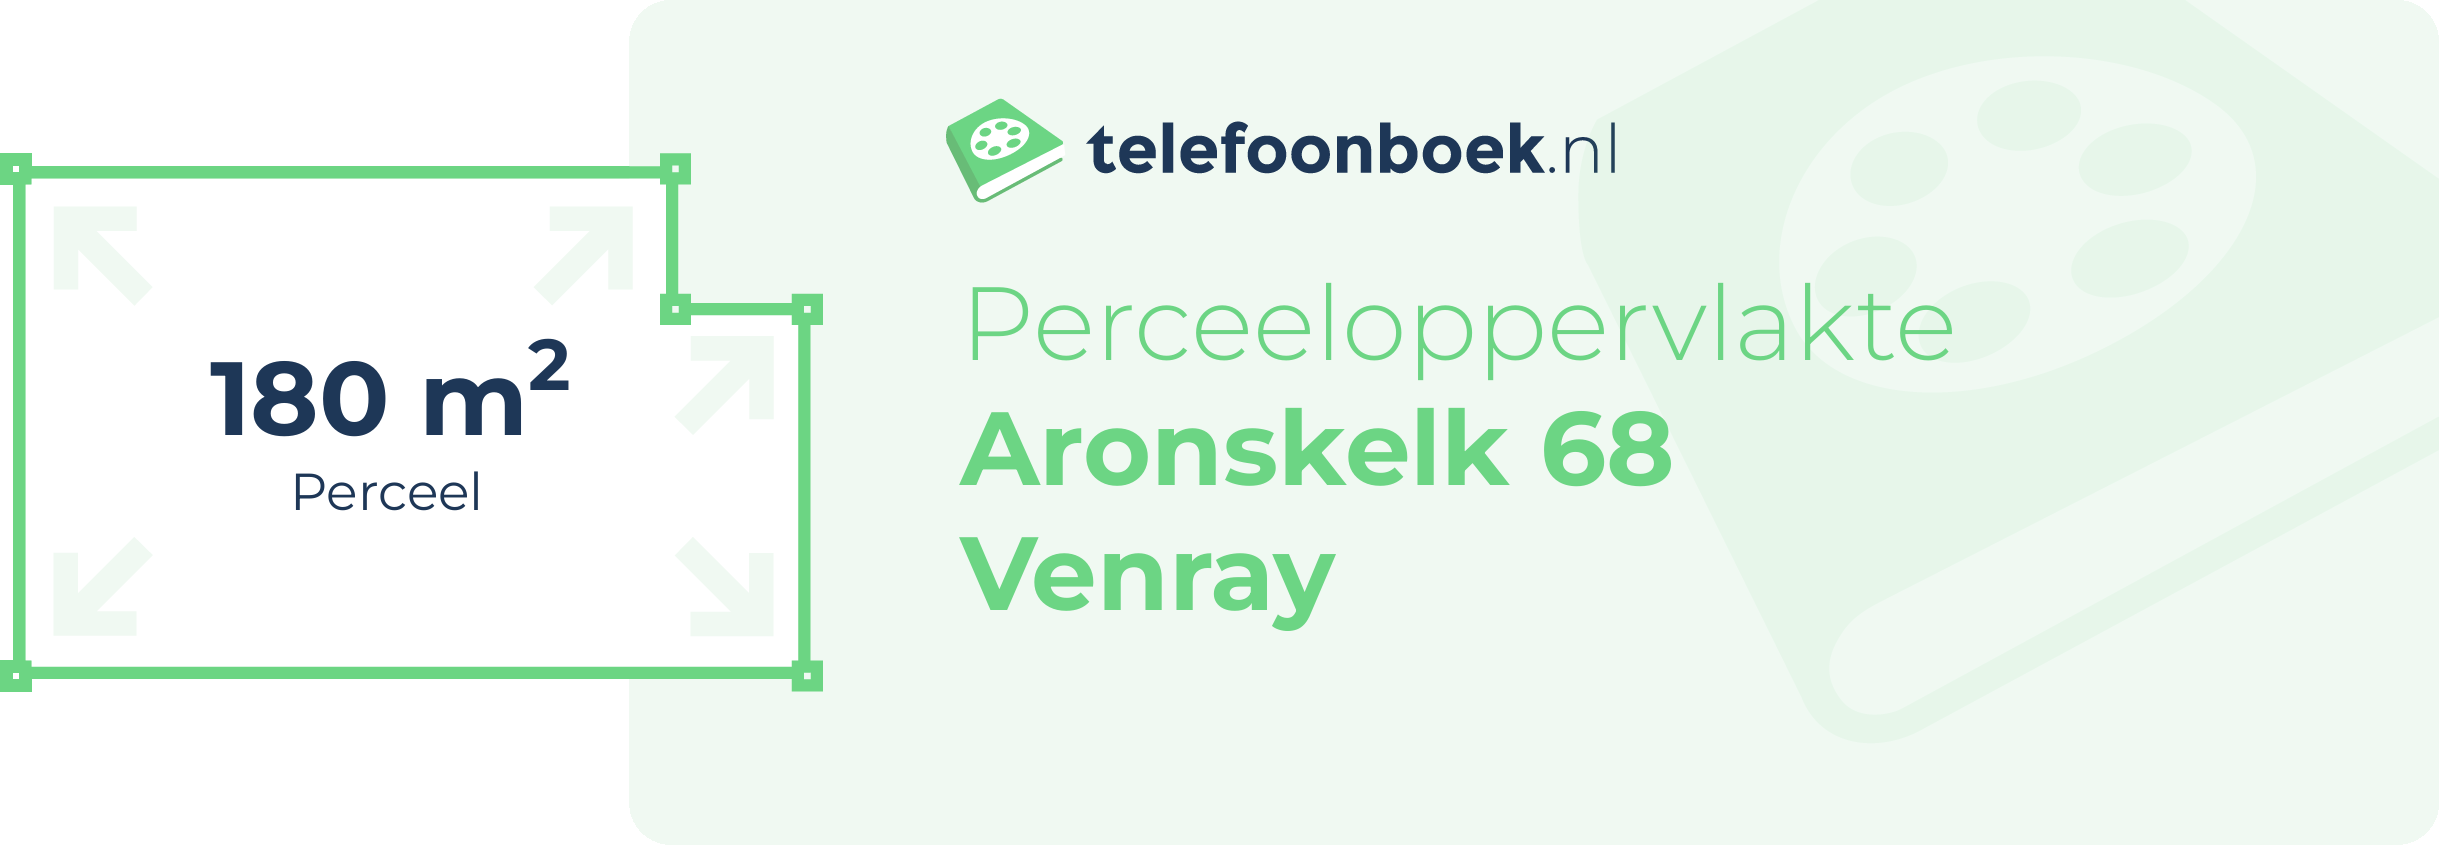 Perceeloppervlakte Aronskelk 68 Venray